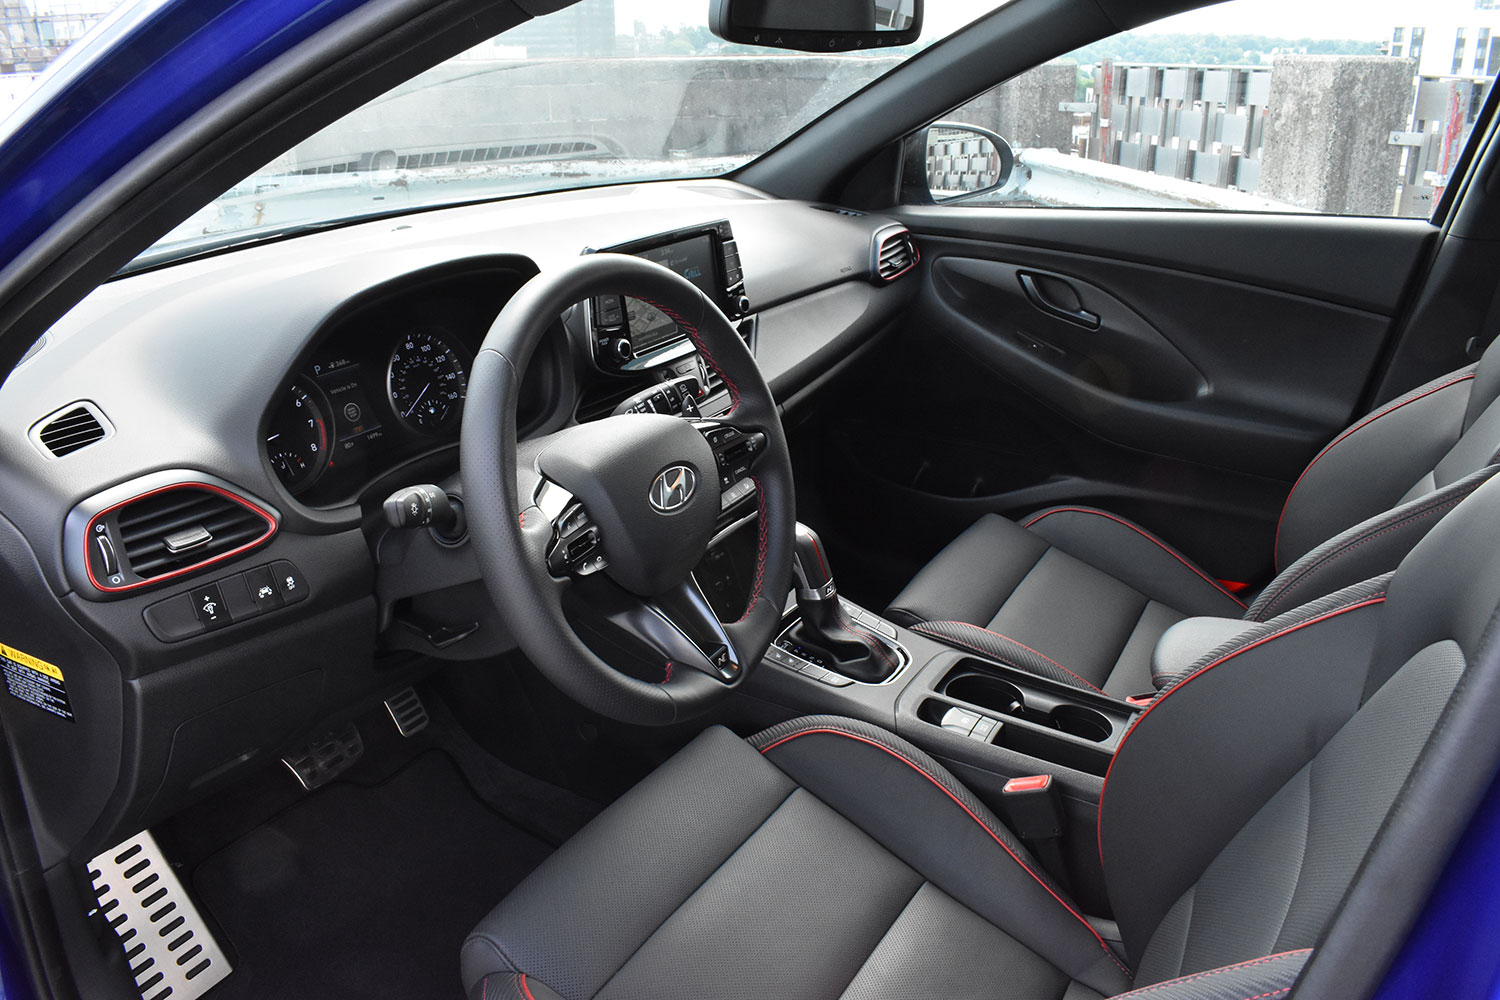 2019 Hyundai Elantra GT N-Line Review: The Case For Basic Hatchbacks |  Digital Trends